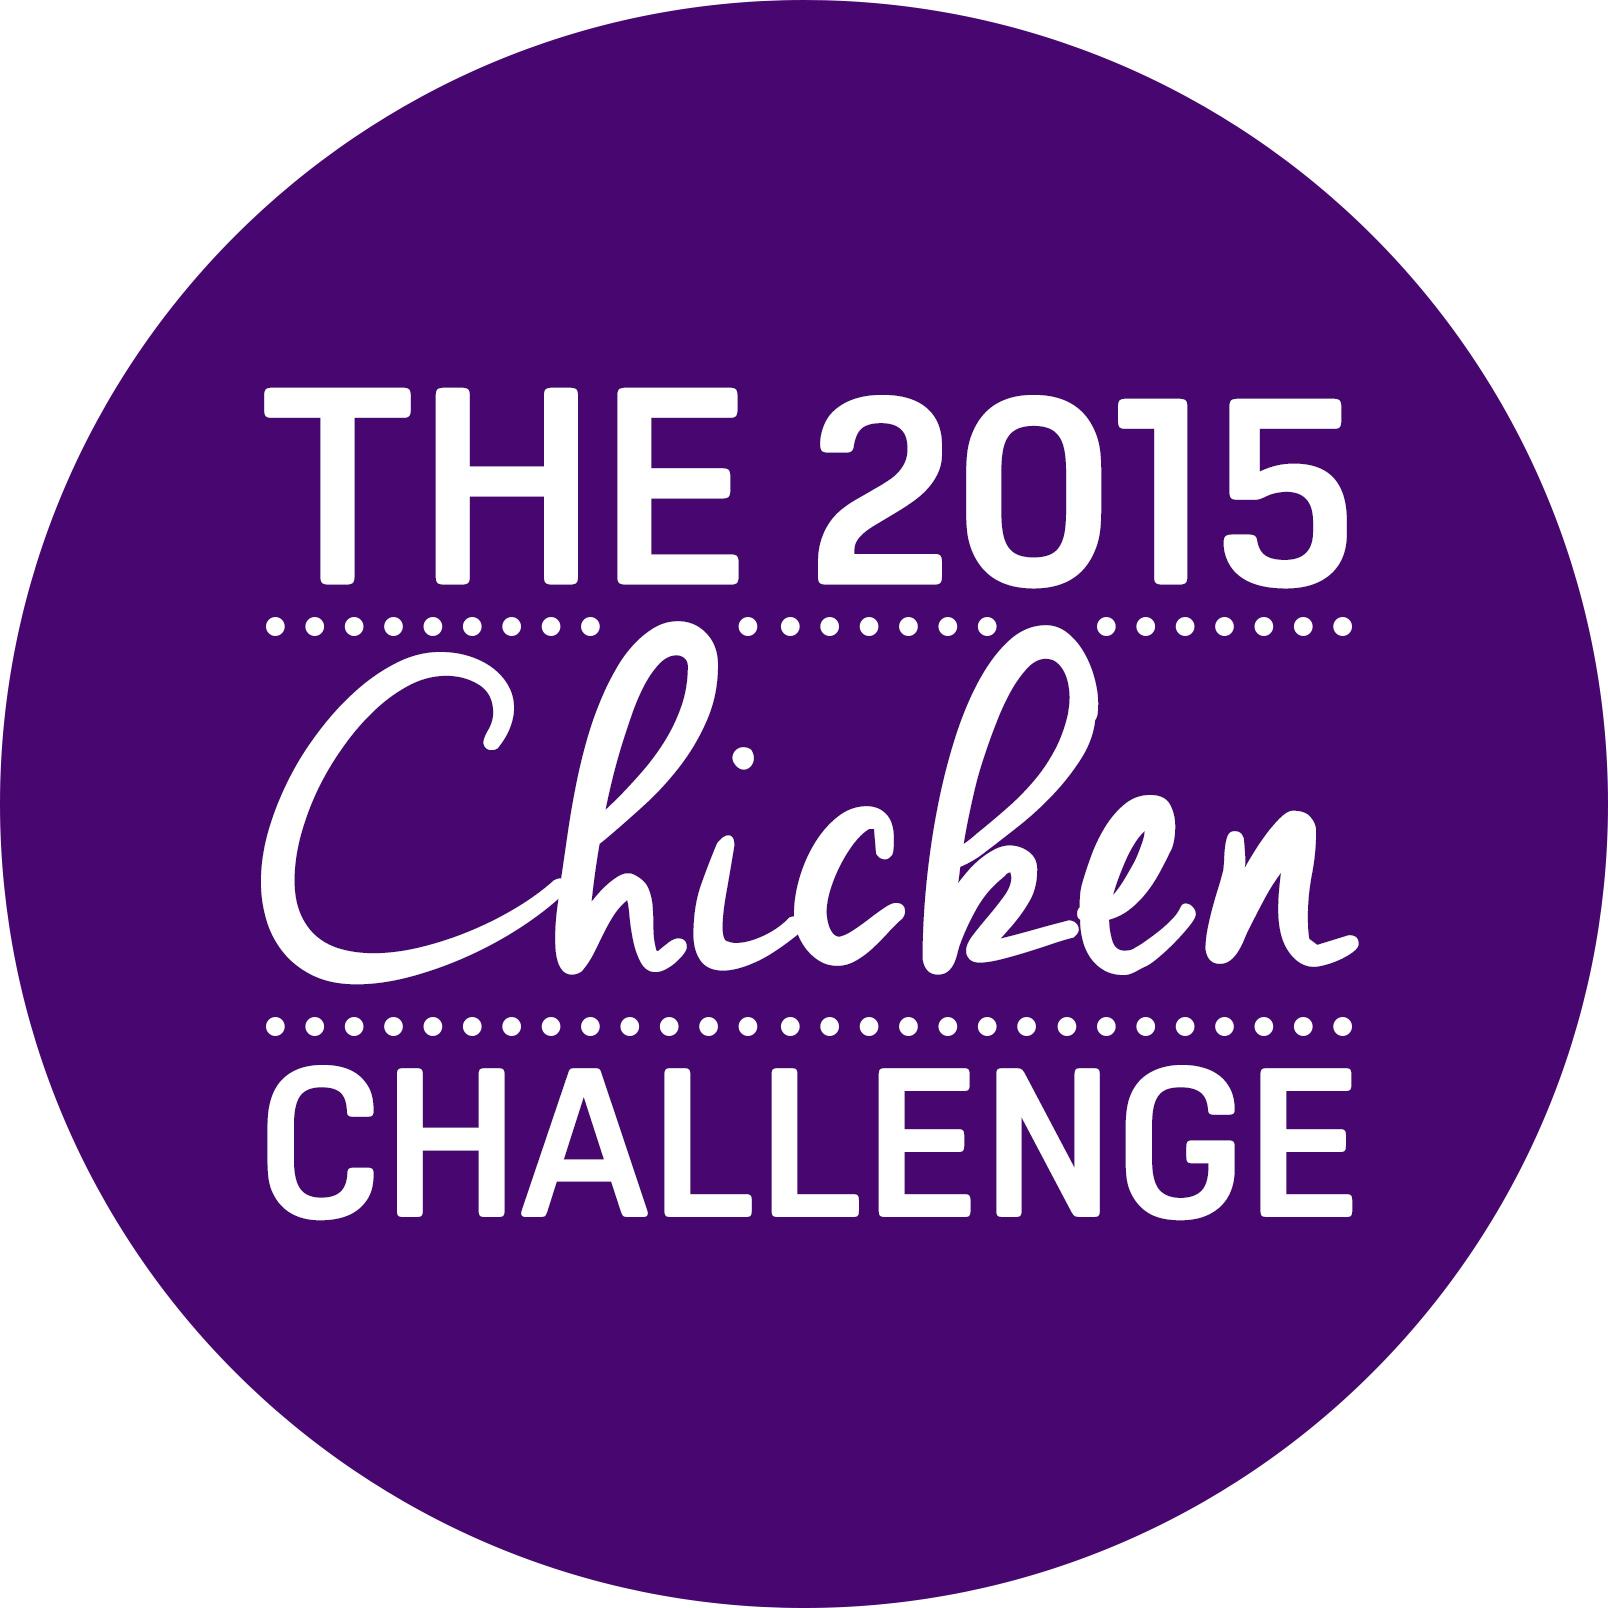 The 2015 Chicken Challenge